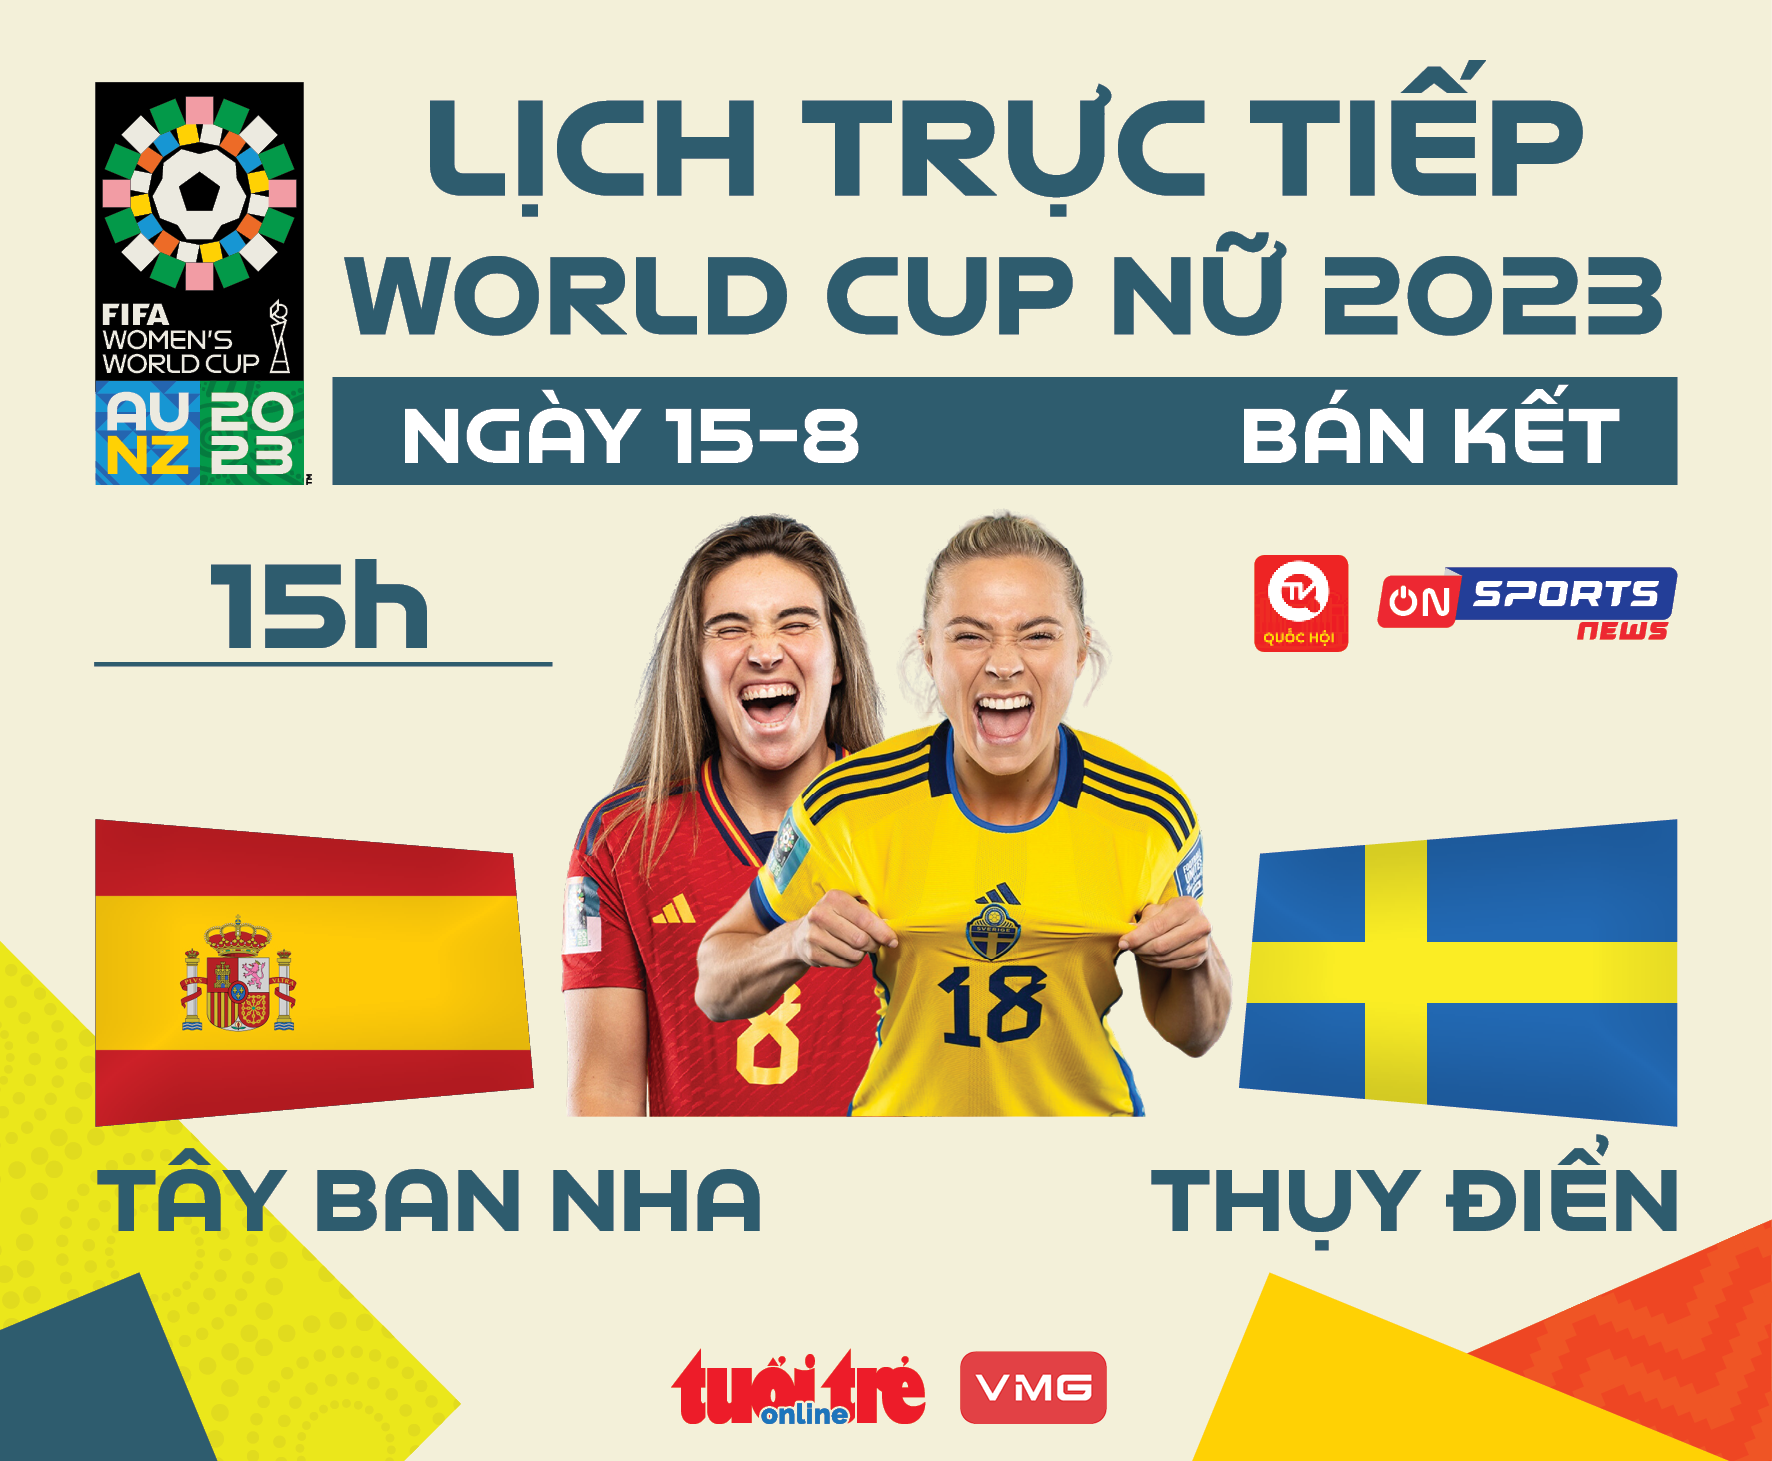 Lịch trực tiếp bán kết World Cup nữ 2023: Tây Ban Nha gặp Thụy Điển - Ảnh 1.